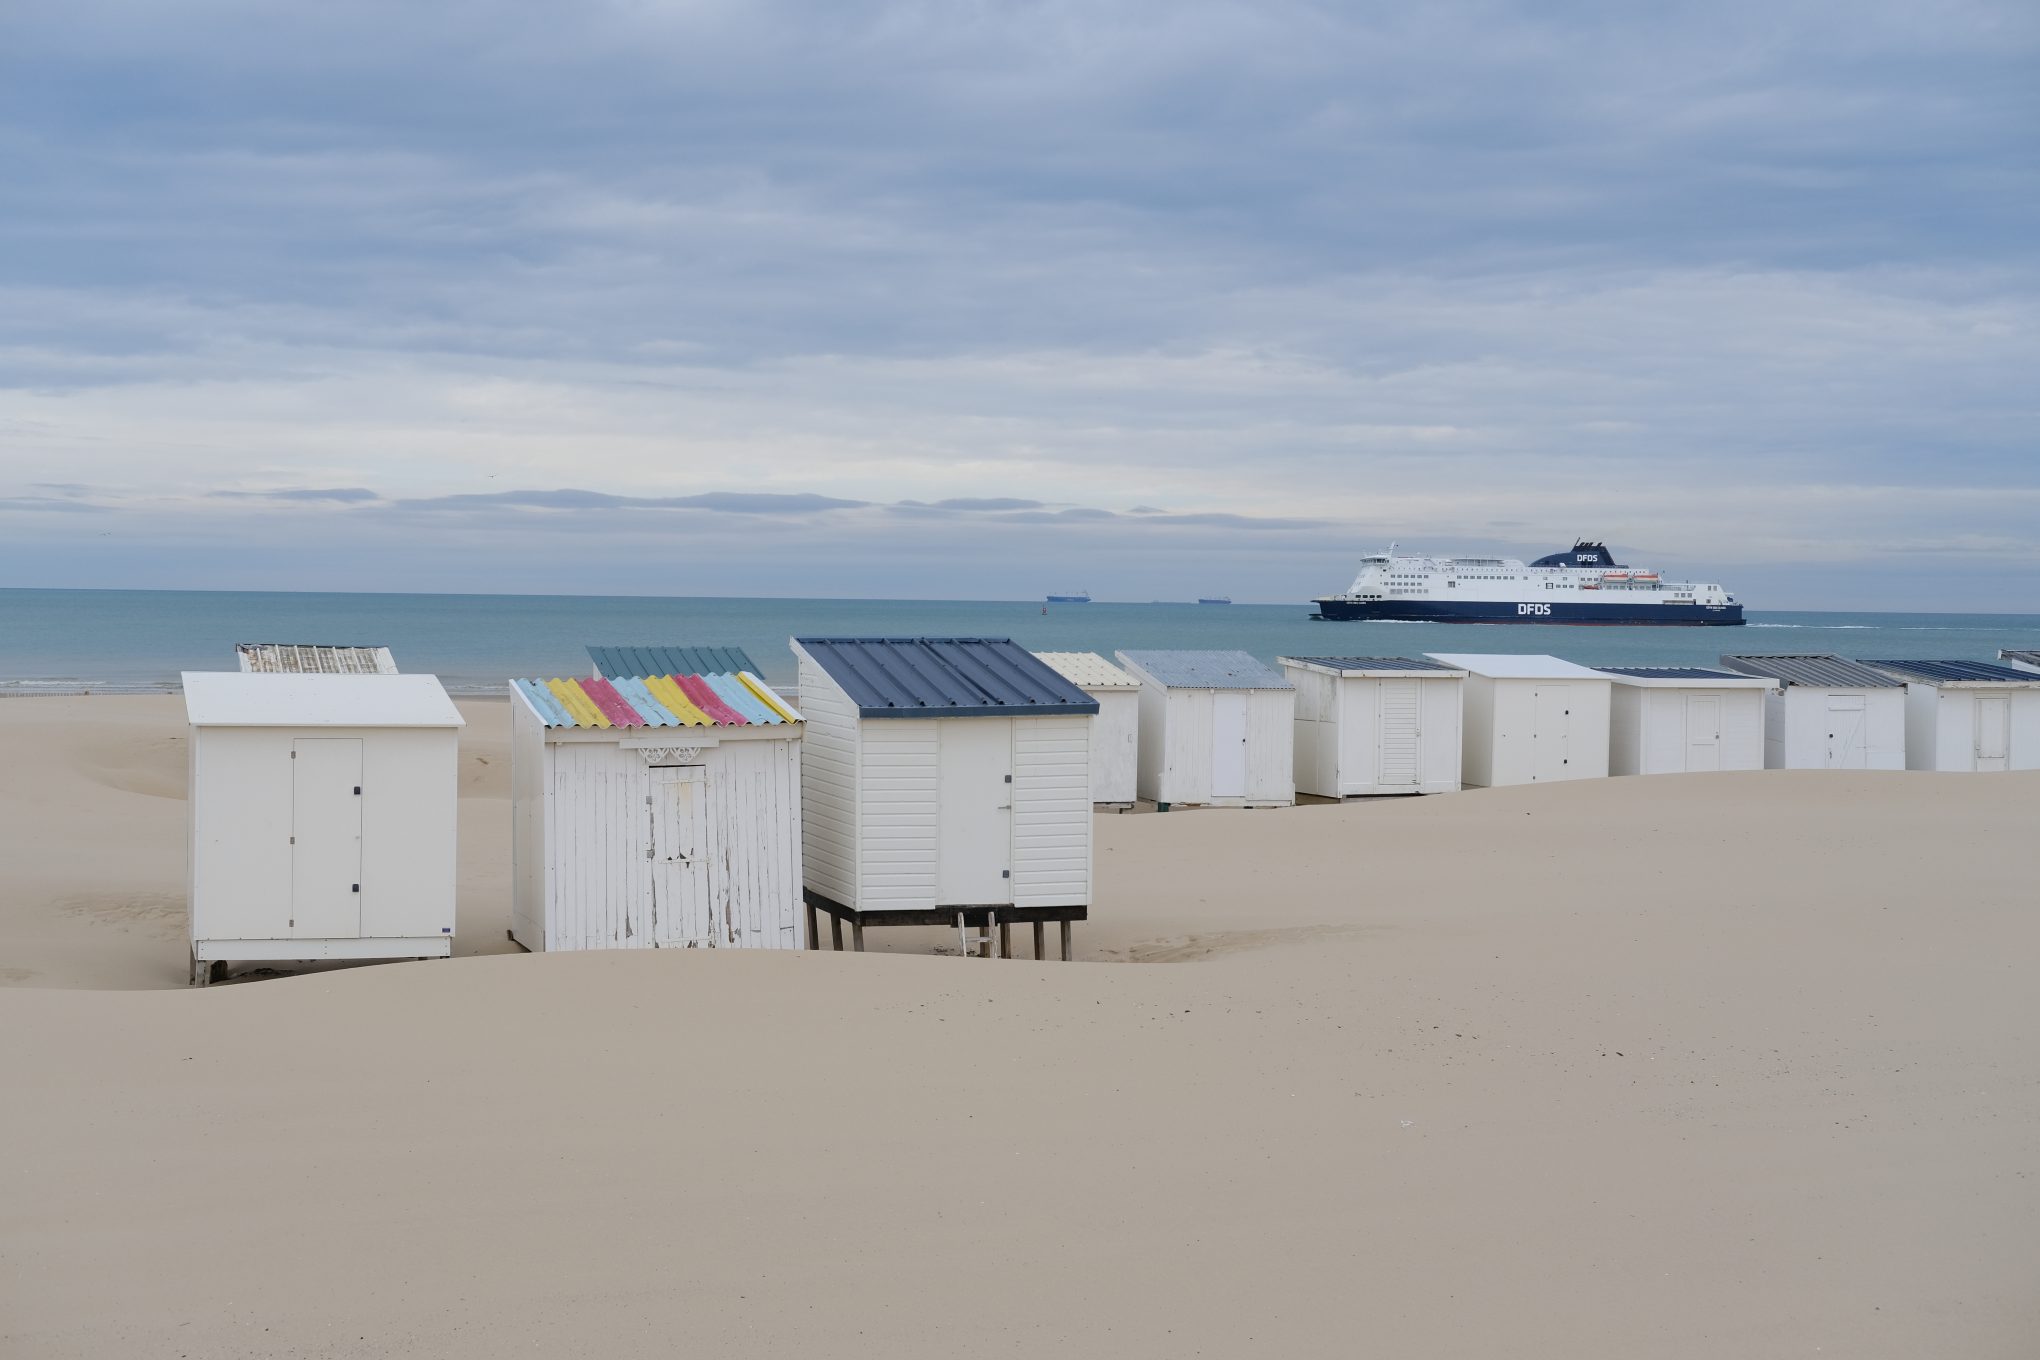 Les petites cabanes de plages de Calais